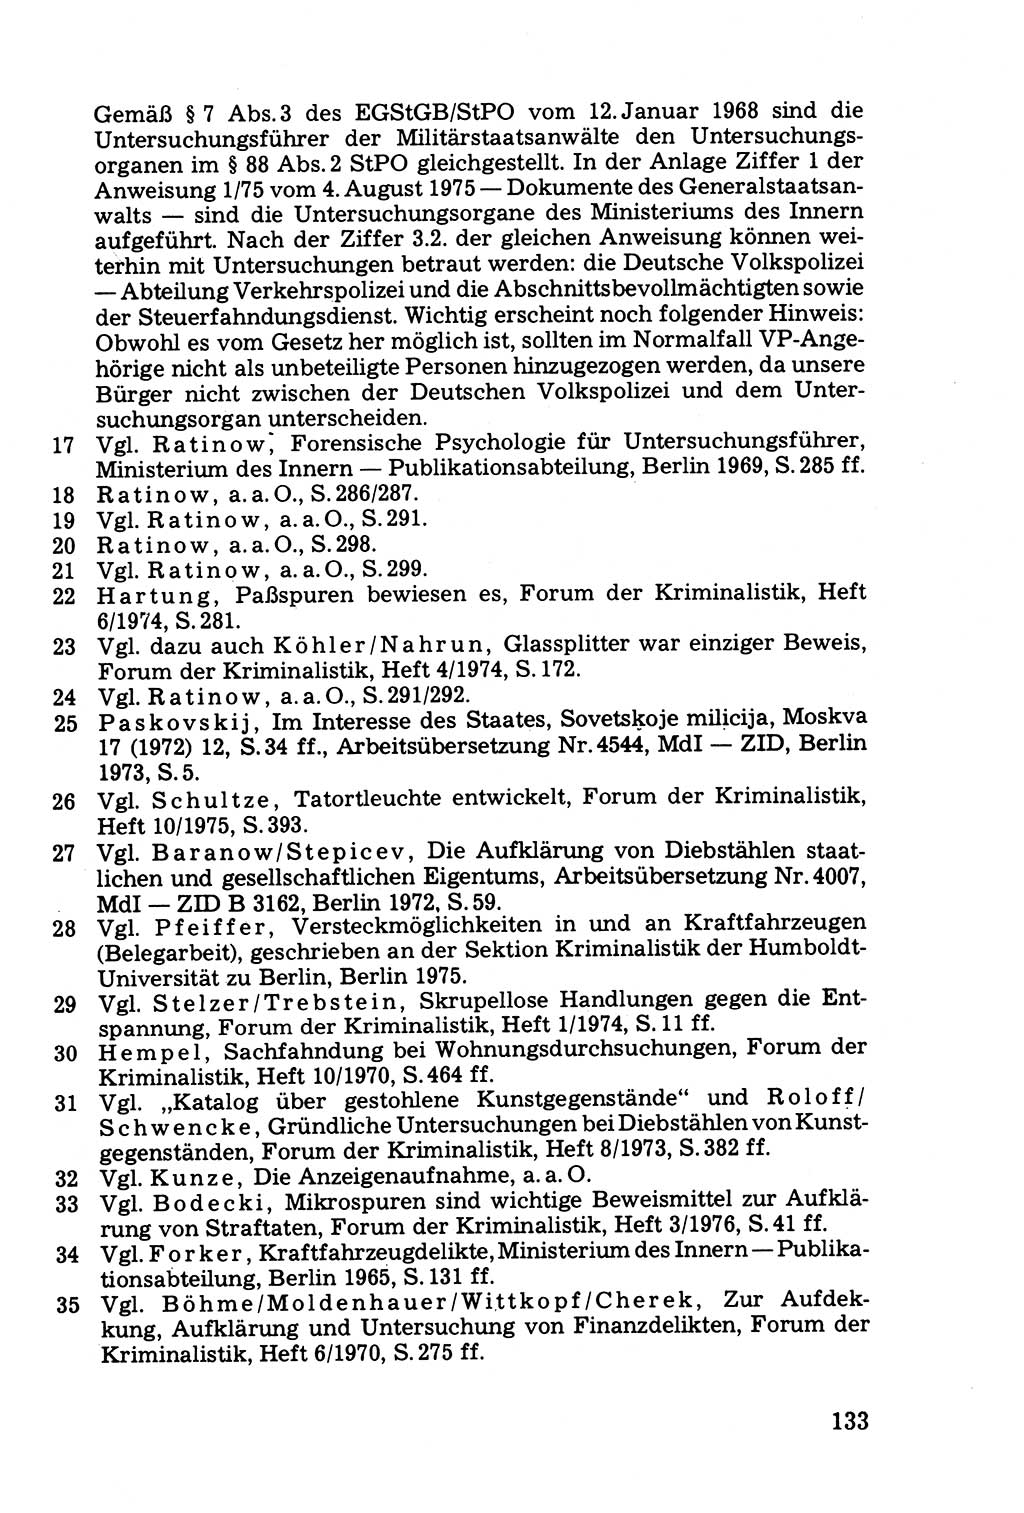 Die Durchsuchung und die Beschlagnahme [Deutsche Demokratische Republik (DDR)] 1979, Seite 133 (Durchs. Beschl. DDR 1979, S. 133)